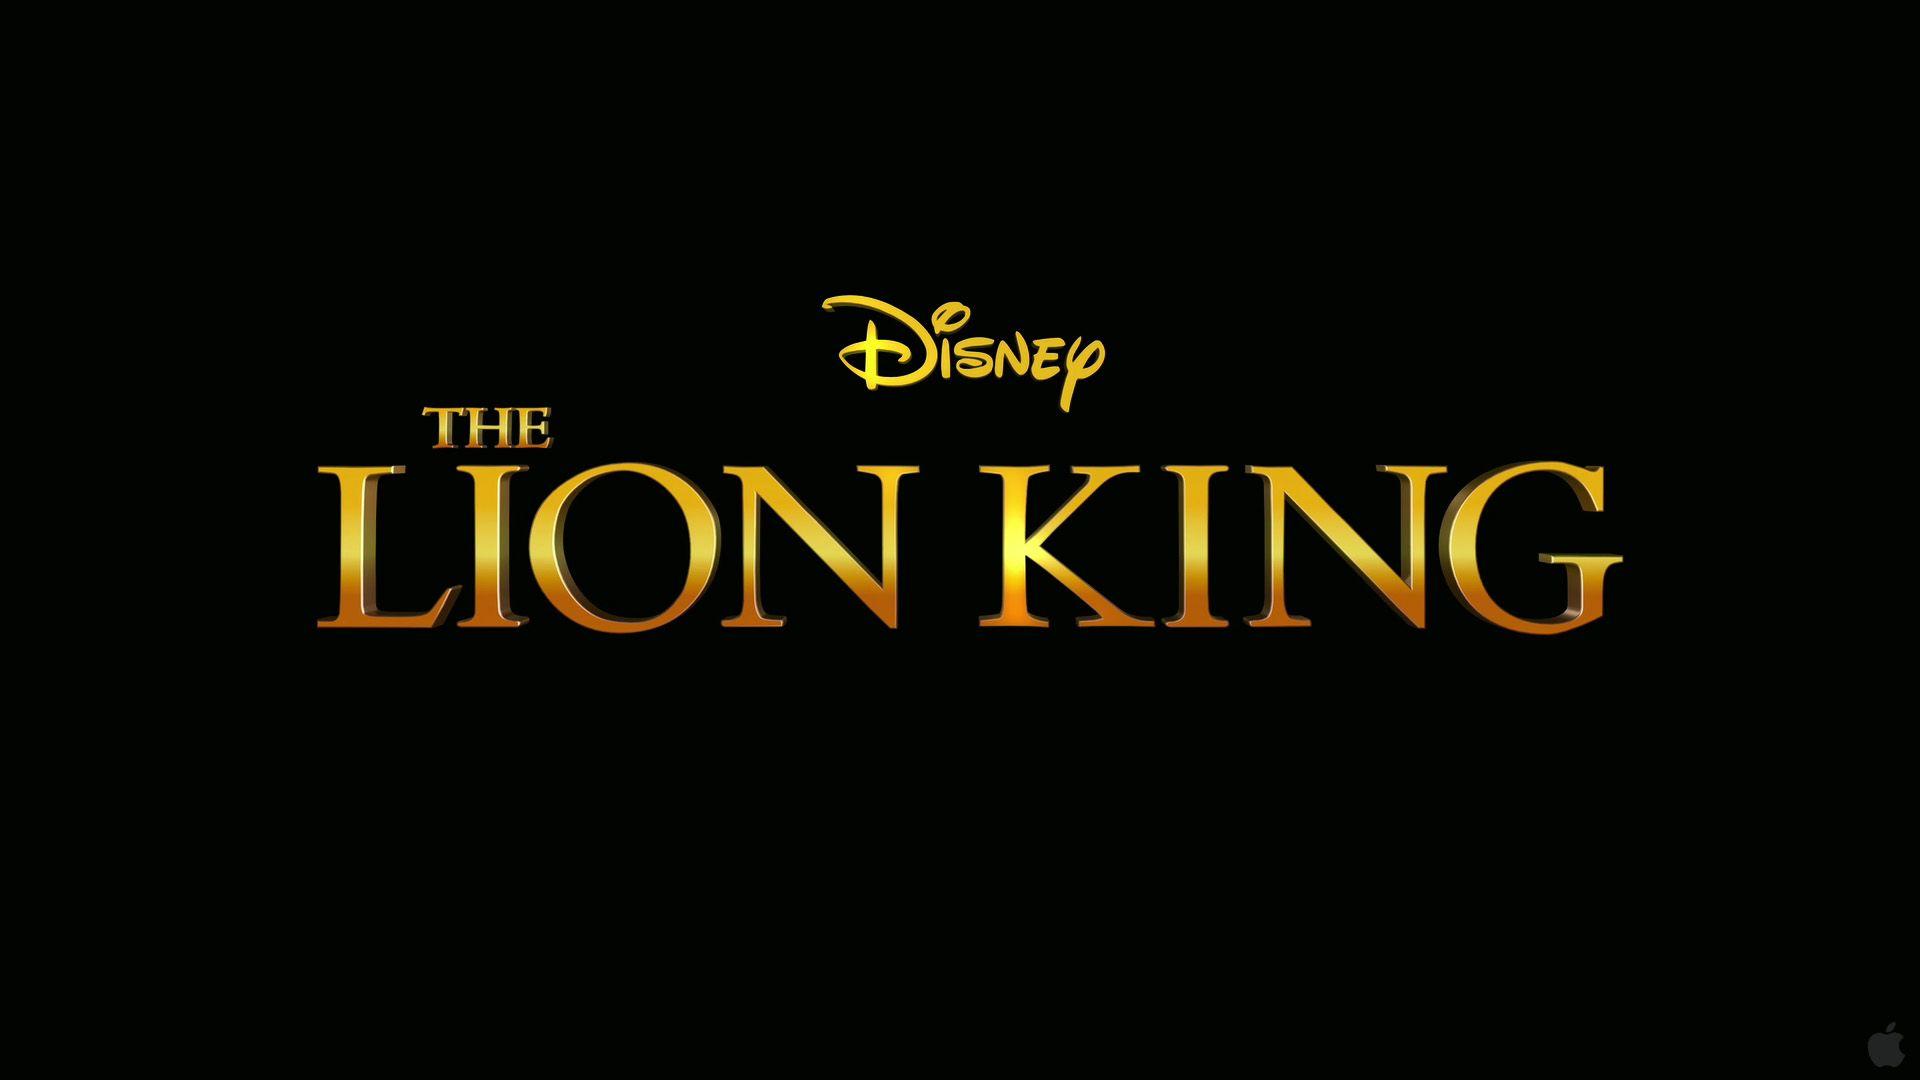 Disney's Lion King Movie Logo - Lion king Logos